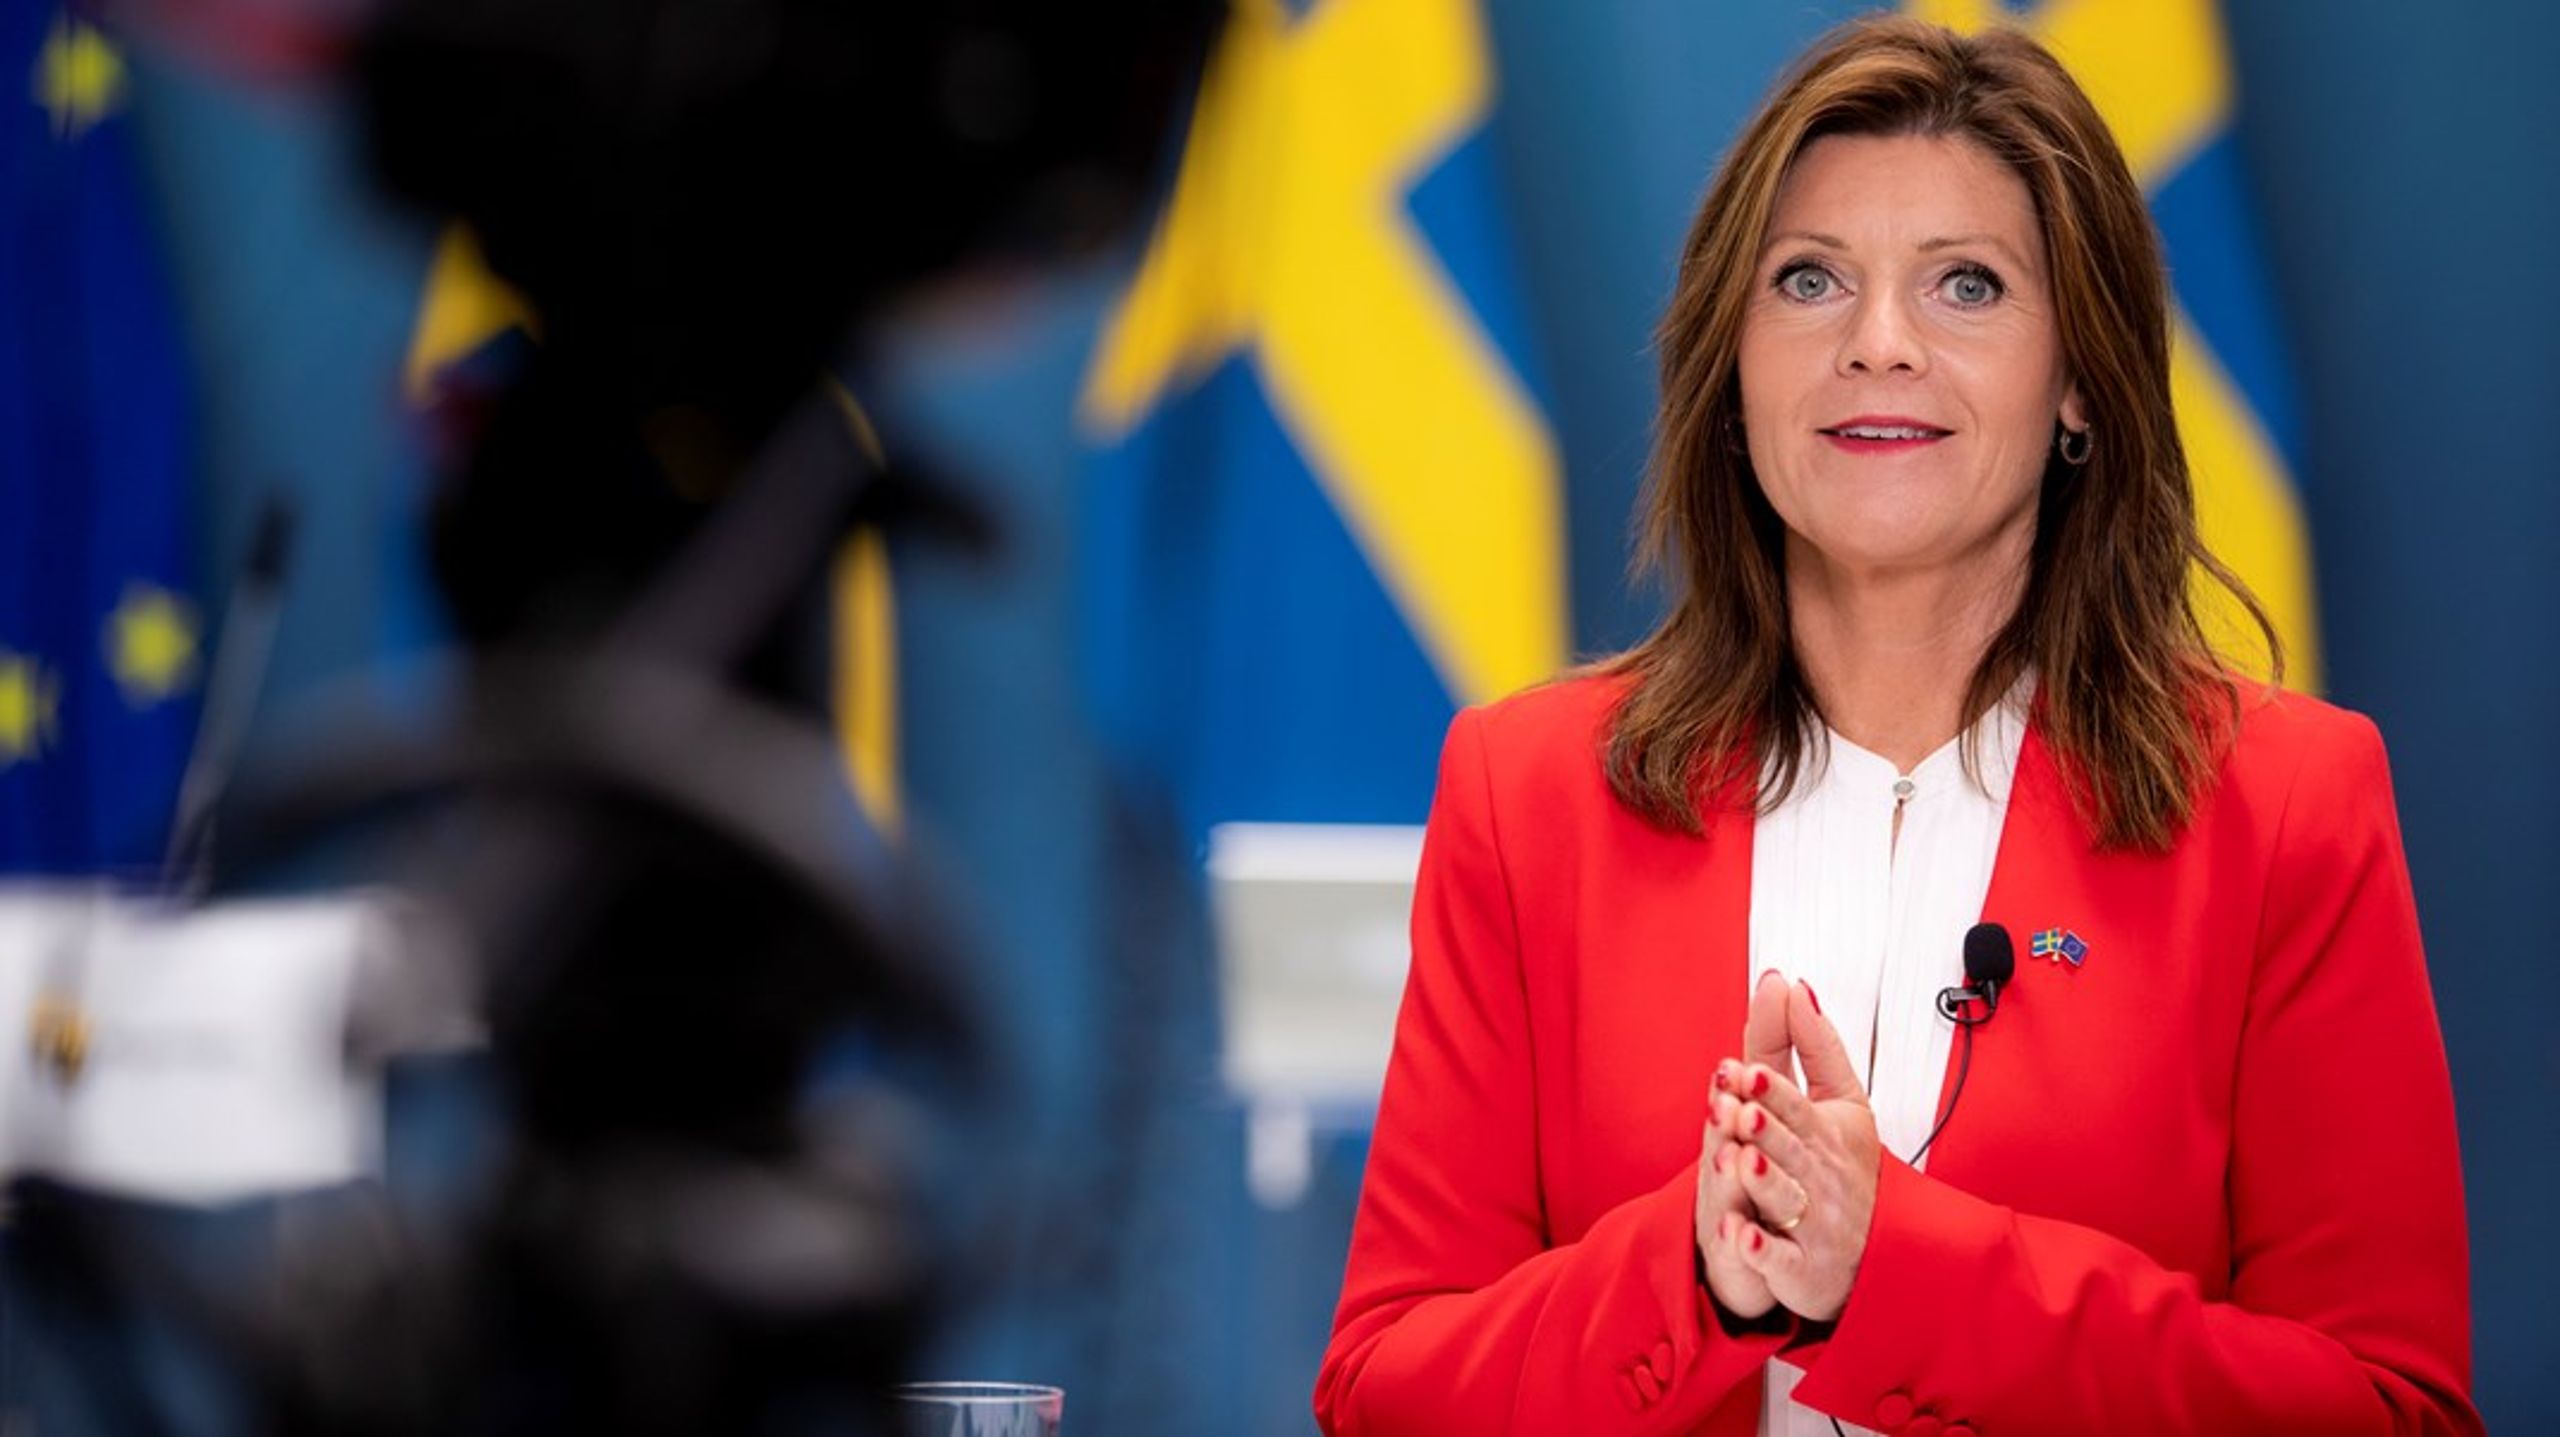 Arbetsmarknadsminister Eva Nordmark (S) har en diger svarshög att gå igenom i höst.